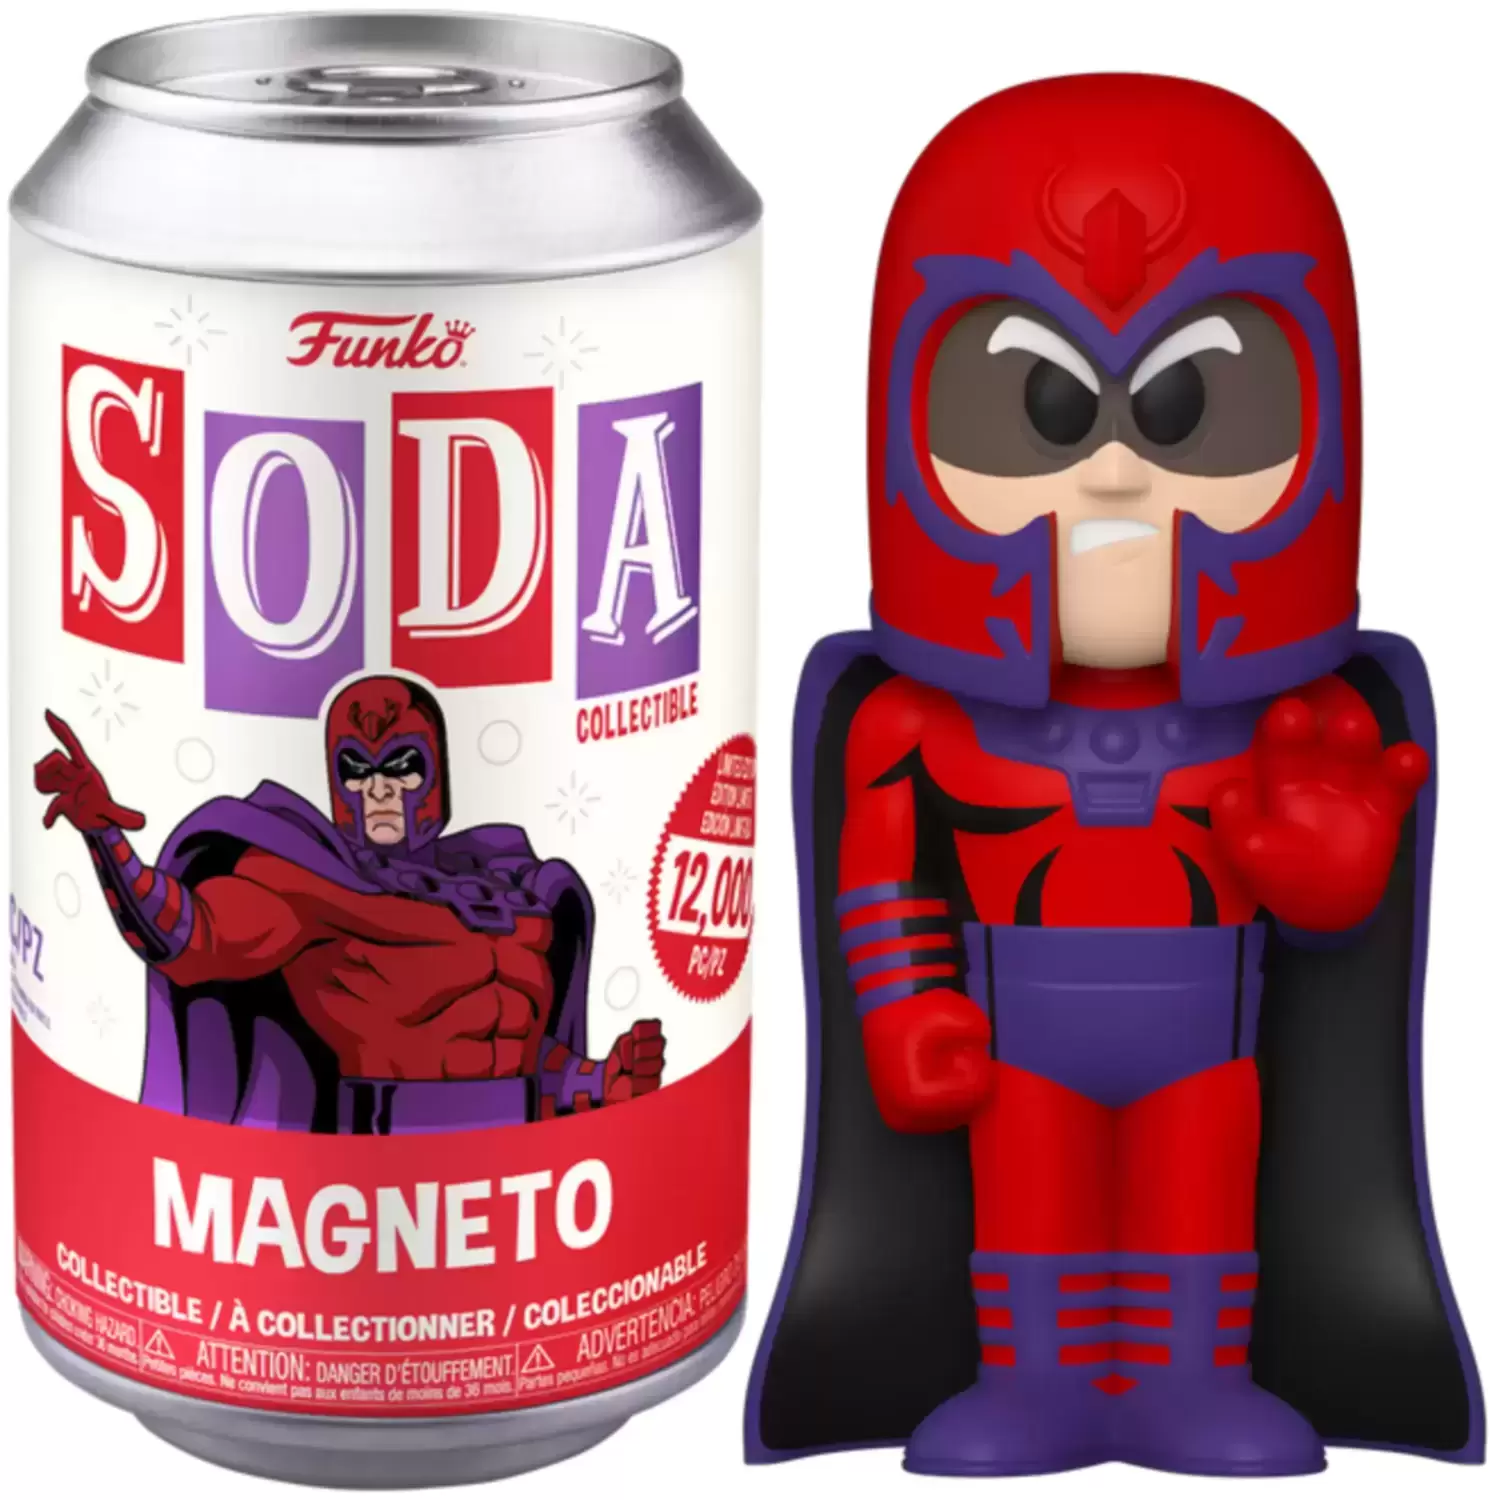 Vinyl Soda! - Magneto